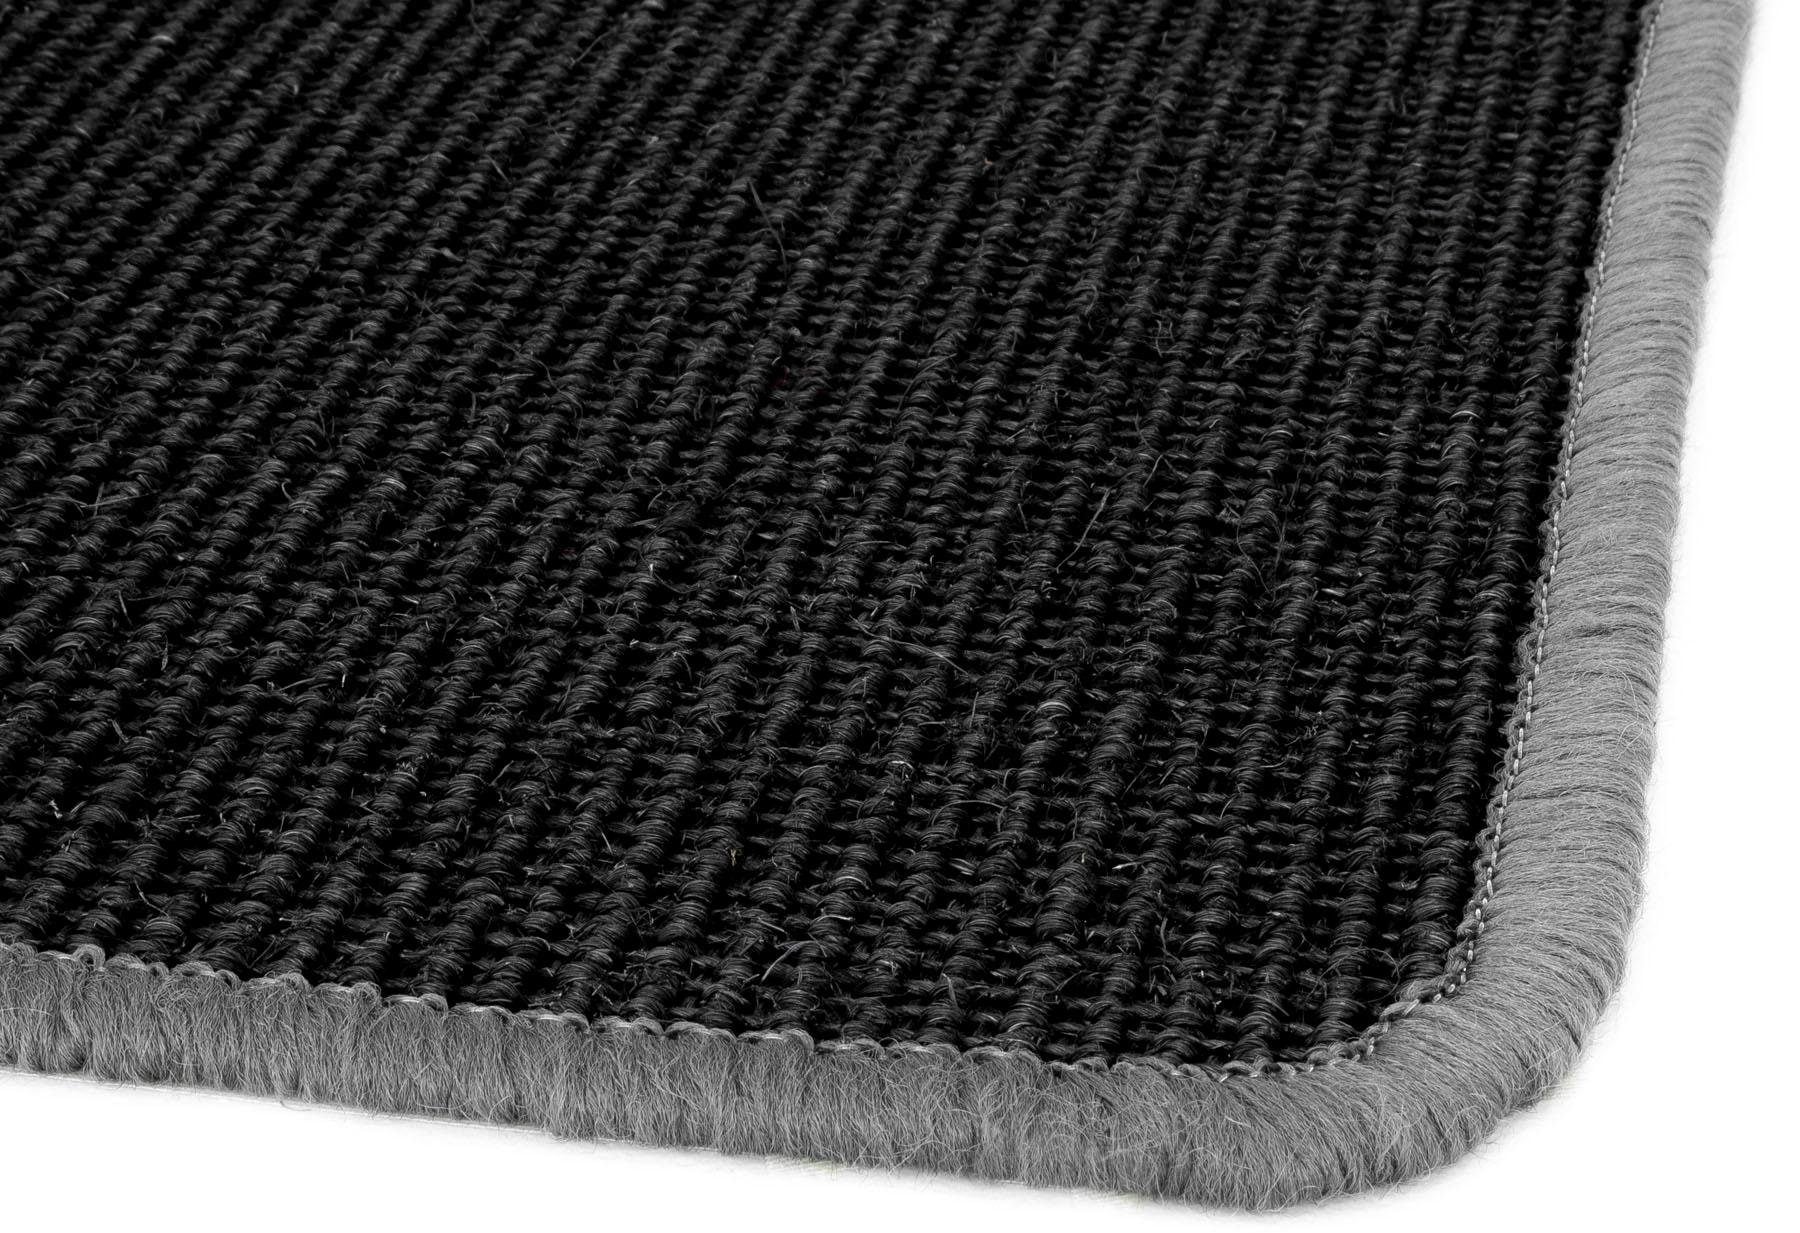 Primaflor-Ideen in Textil Sisalteppich »SISALLUX«, rechteckig, Obermaterial: 100% Sisal, ideal im Wohnzimmer & Schlafzimmer